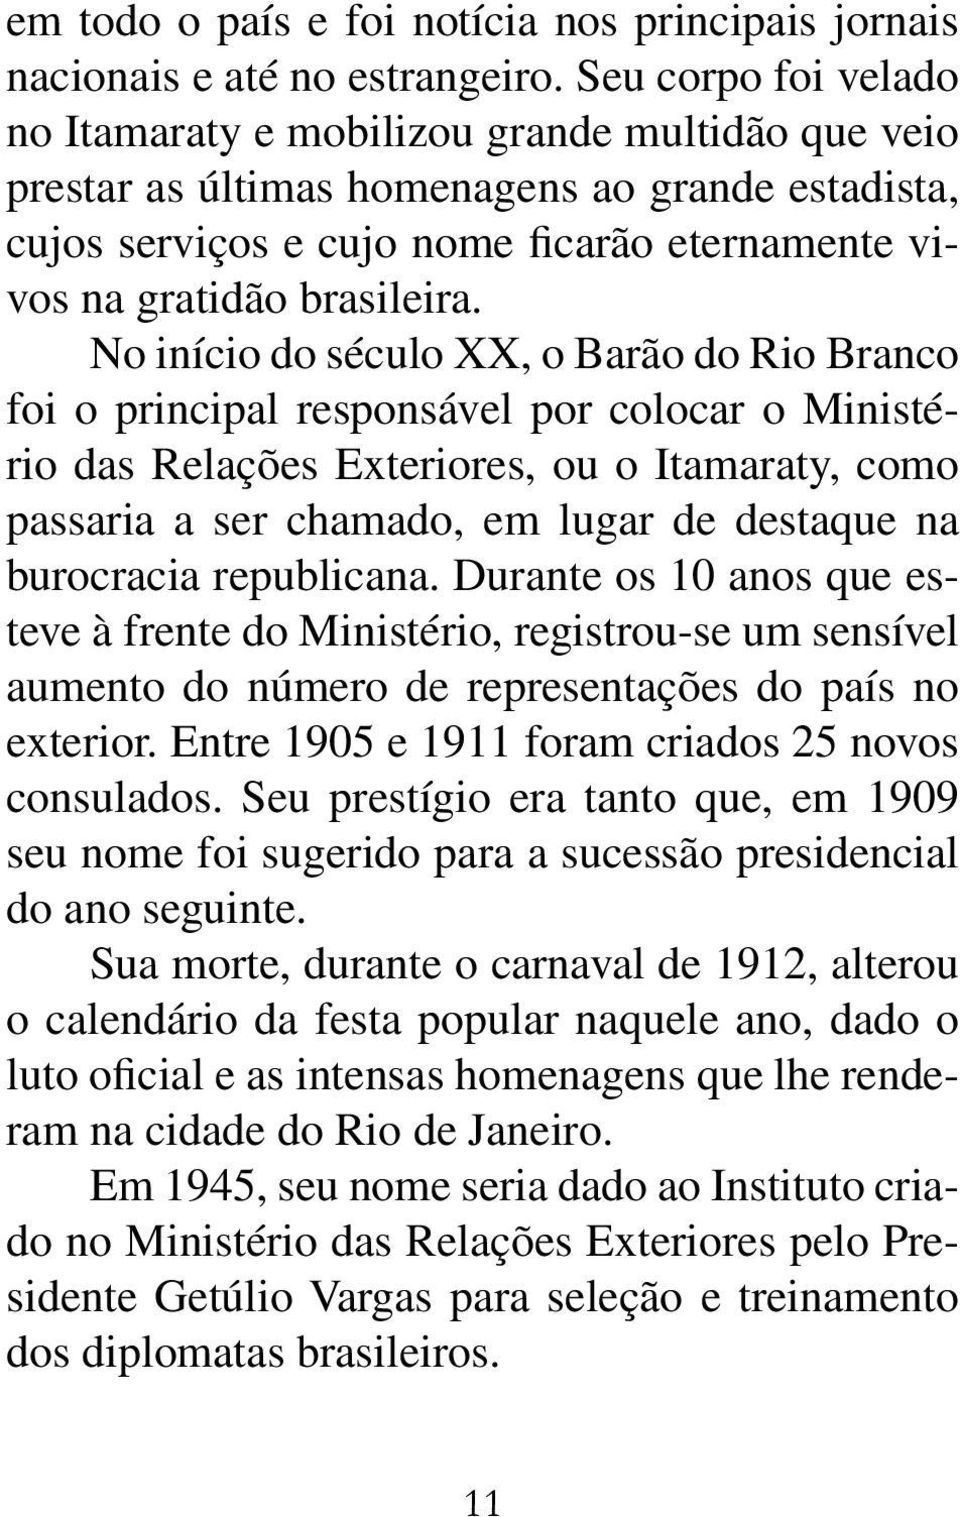 No início do século XX, o Barão do Rio Branco foi o principal responsável por colocar o Ministério das Relações Exteriores, ou o Itamaraty, como passaria a ser chamado, em lugar de destaque na